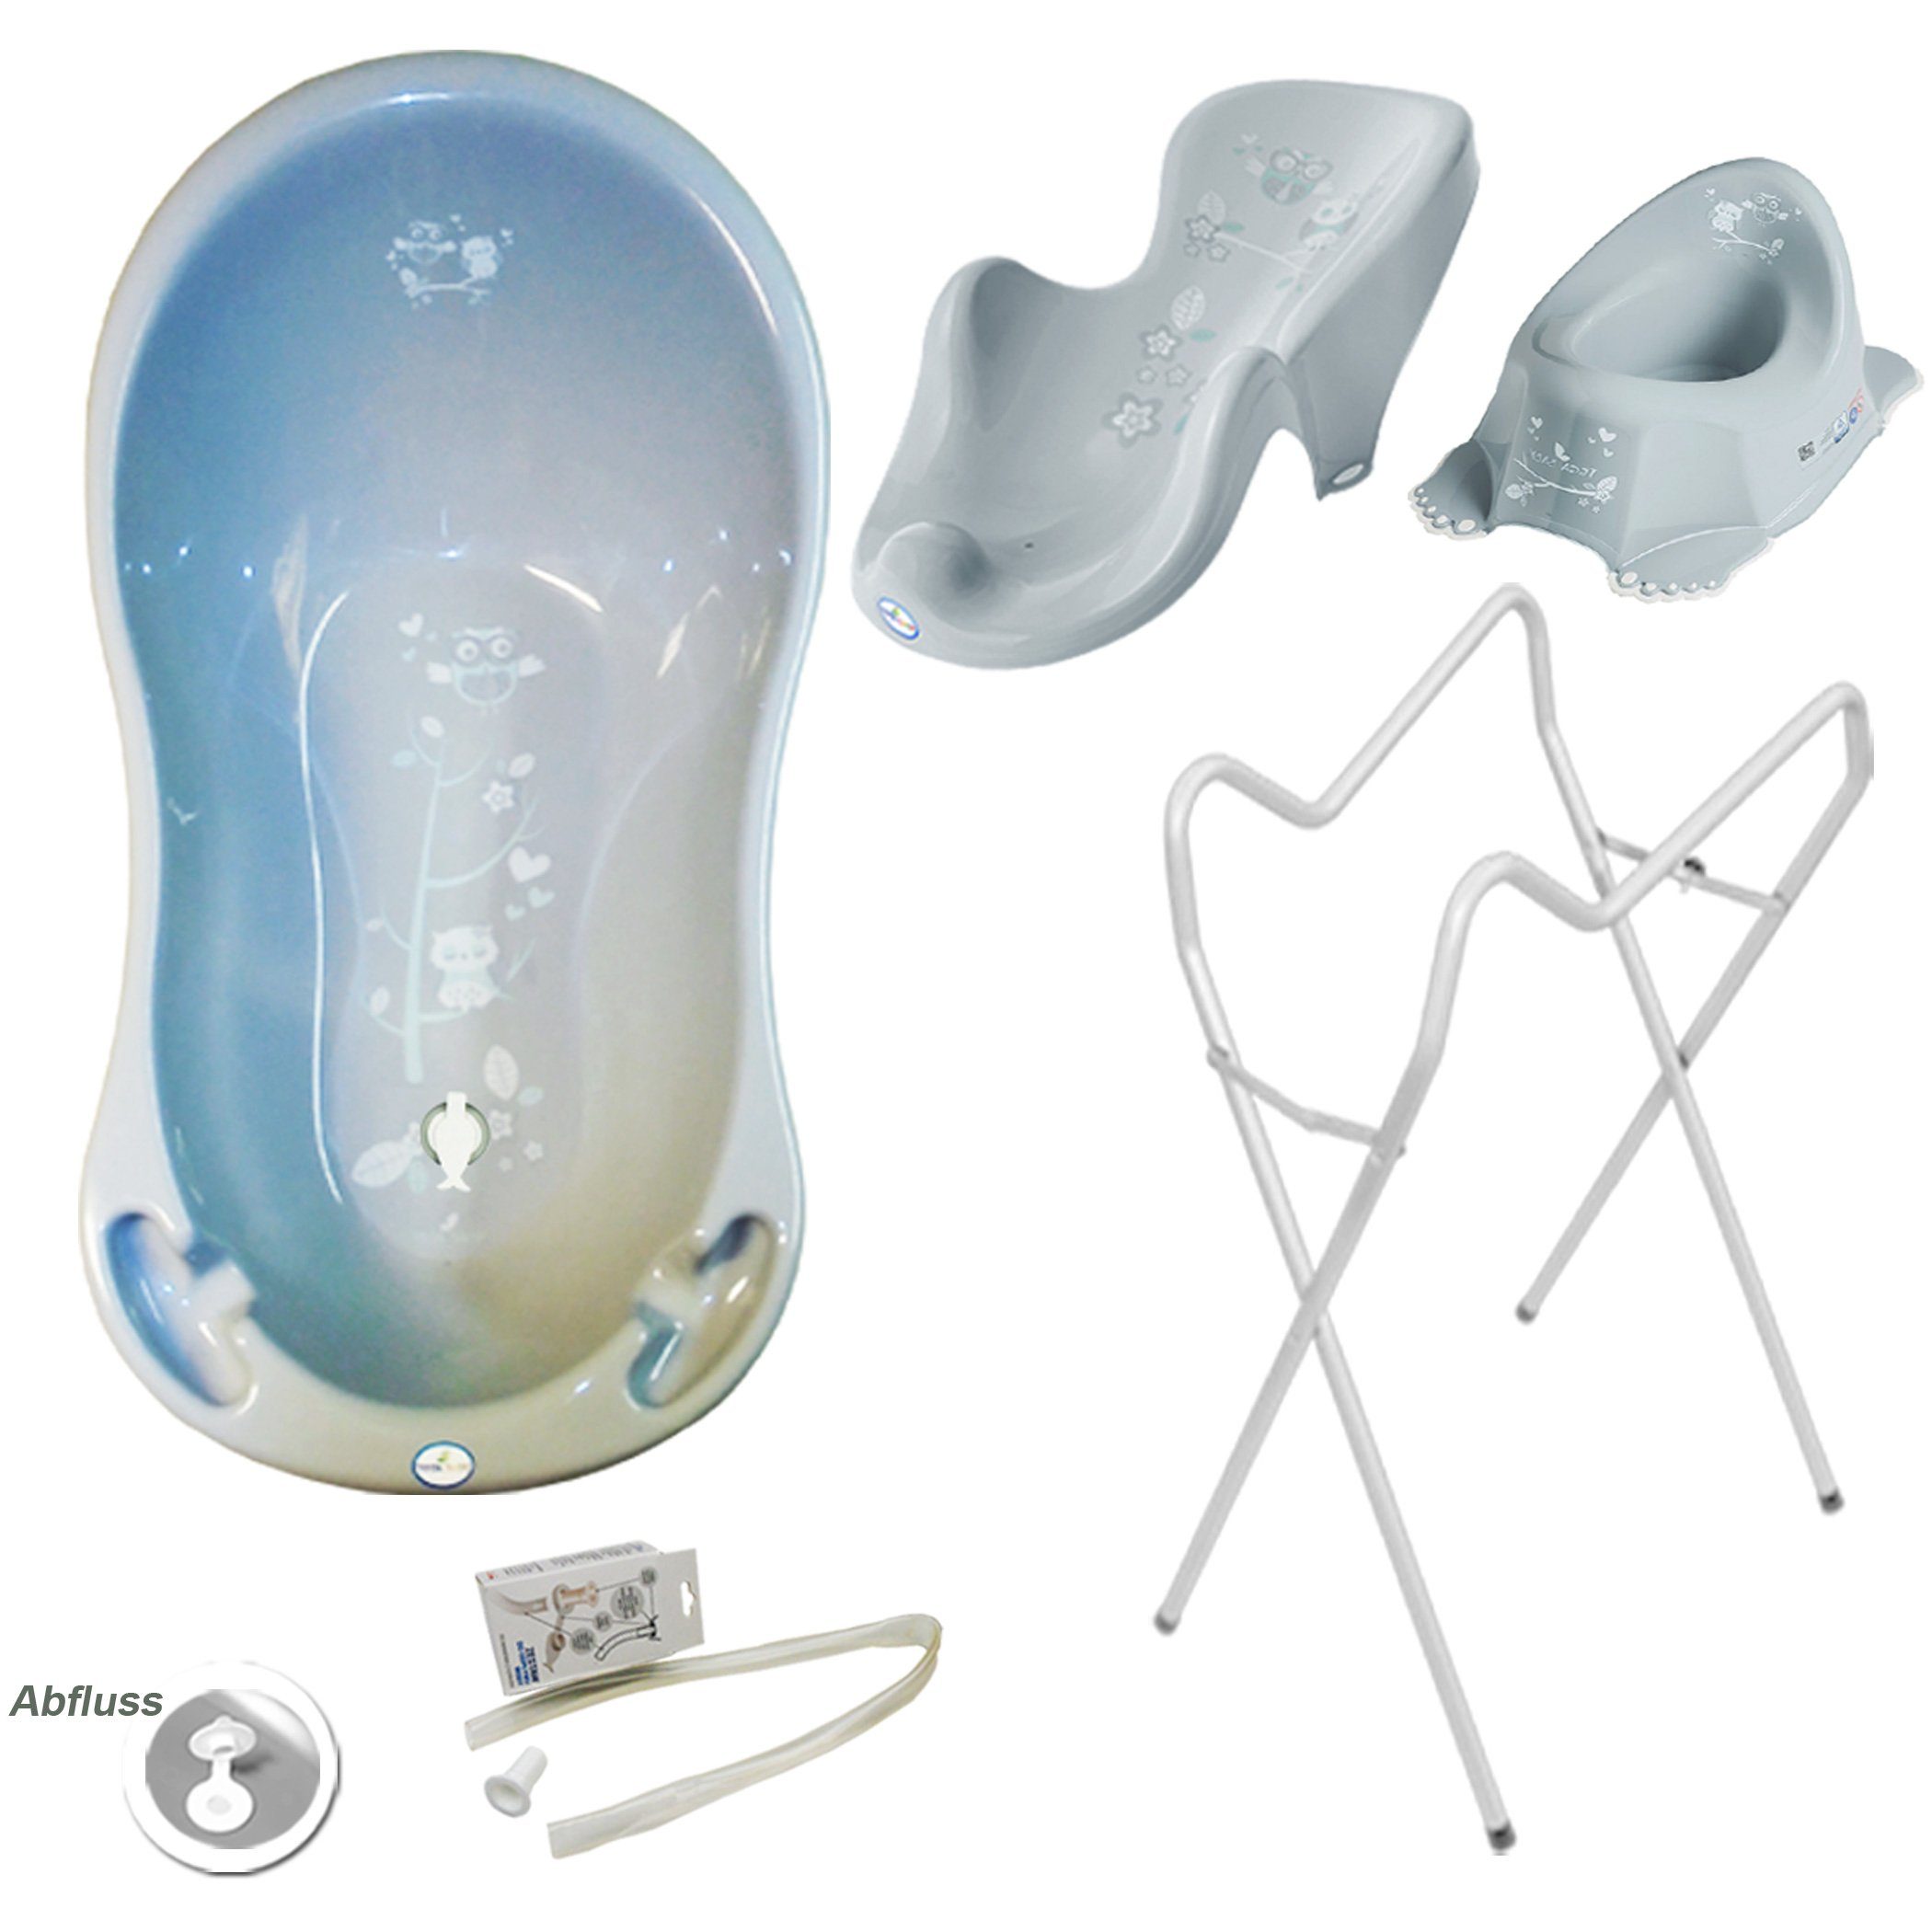 Tega-Baby Babybadewanne 4 Teile SET AB -EULE + Ständer Weiß - Abflussset Baby Wanne, (Premium.set Made in Europe), Wanne+ Badesitz+ Töpfchen+ Ablauf Set+ Ständer